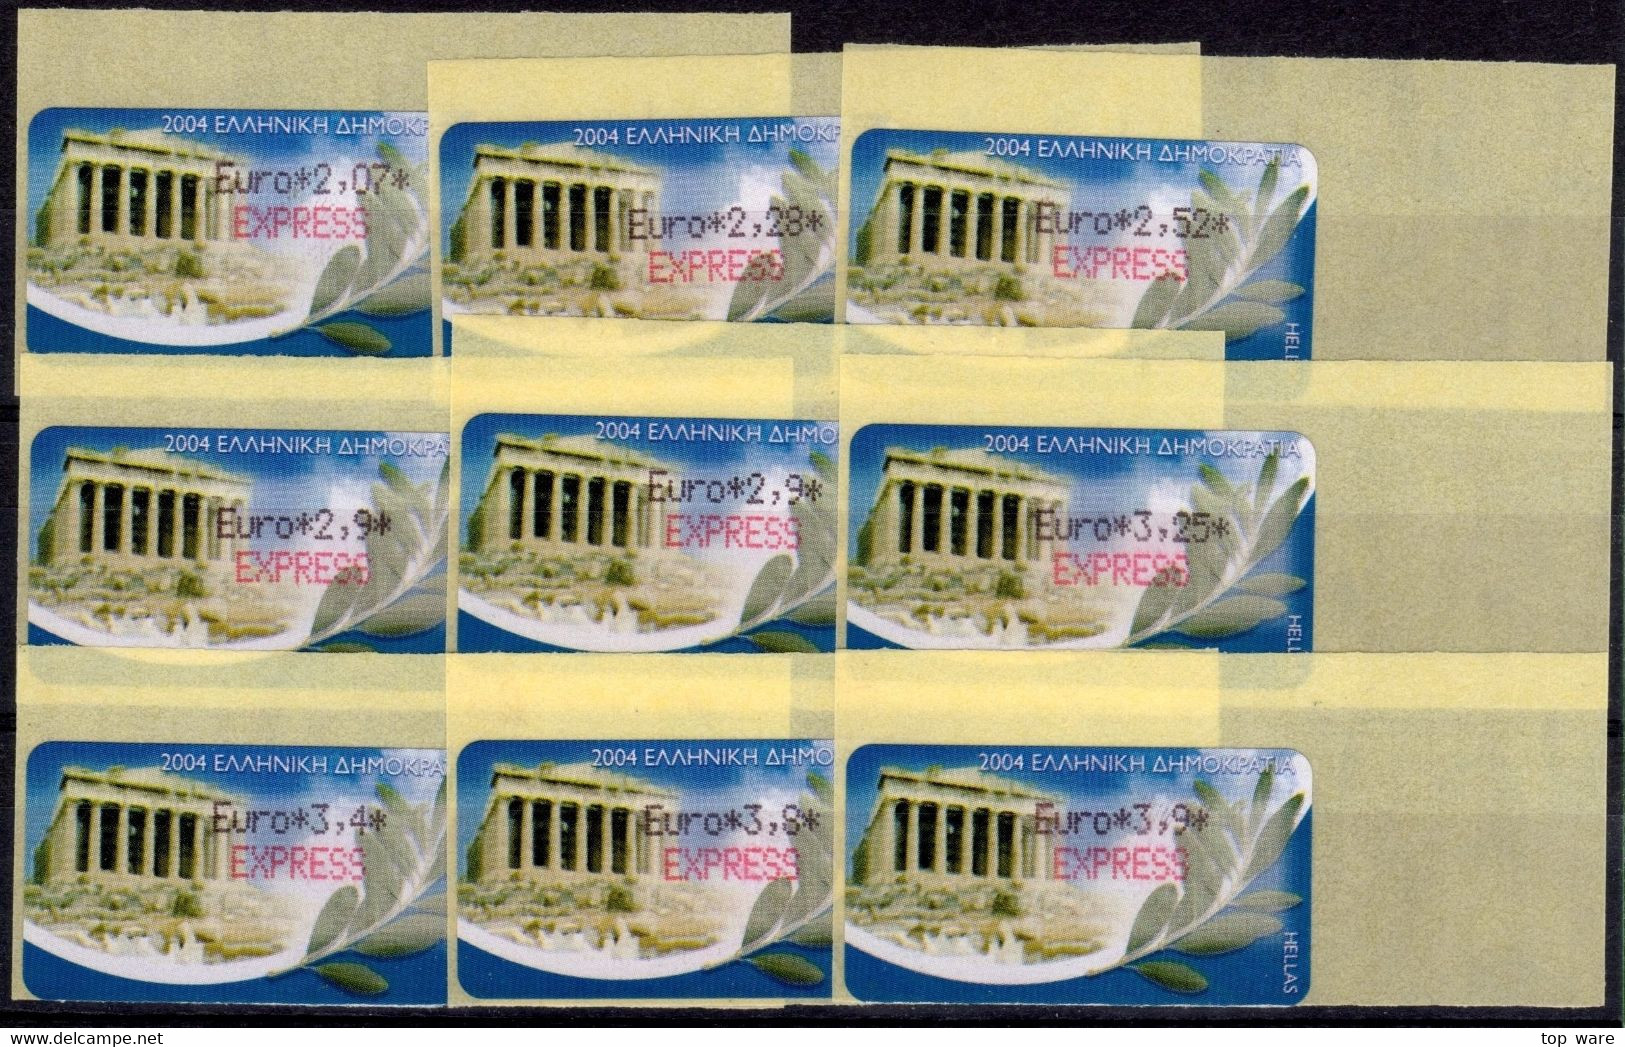 Greece Griechenland HELLAS ATM 22 Parthenon Reprint Paper 2008 * Set 18 Values MNH * Frama Etiquetas Automatenmarken - Timbres De Distributeurs [ATM]